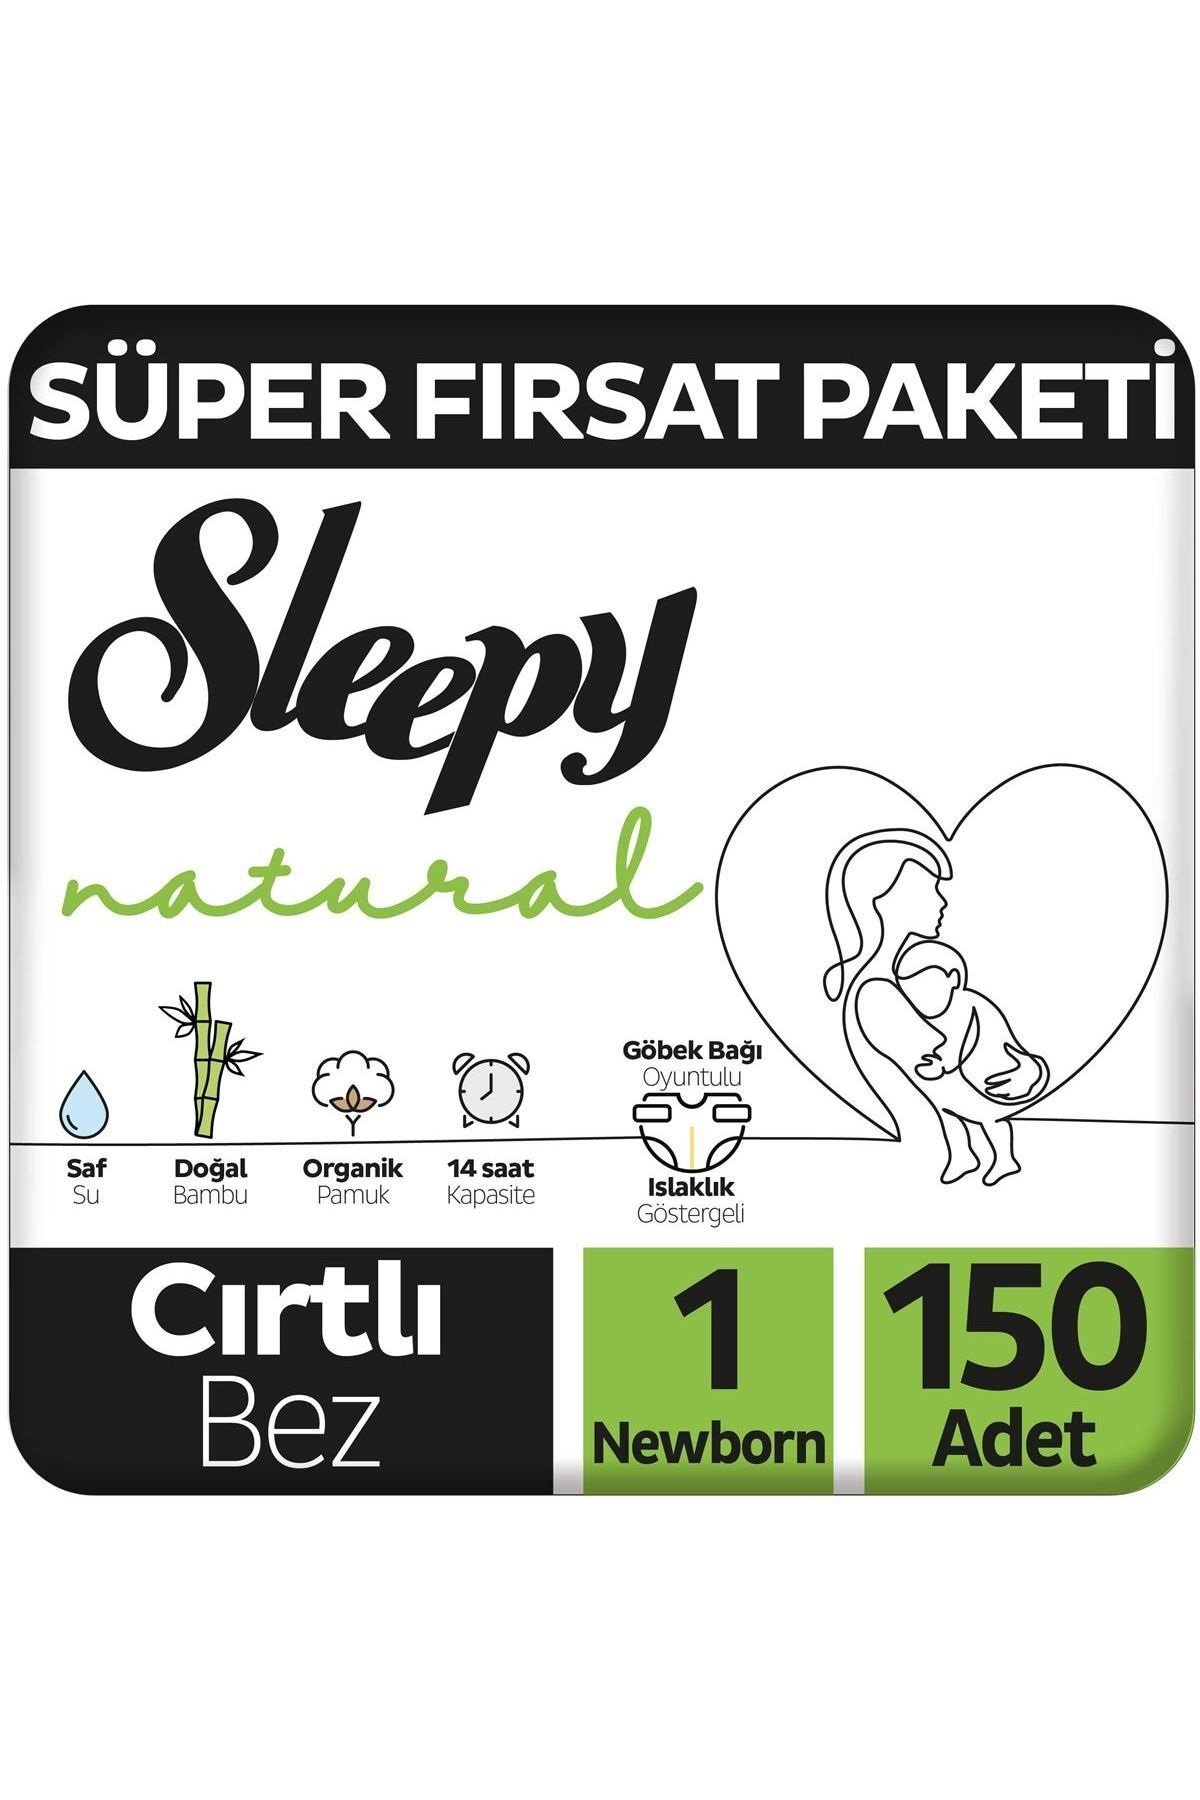 Sleepy Natural Süper Fırsat Paketi Bebek Bezi 1 Numara Newborn 150 Adet